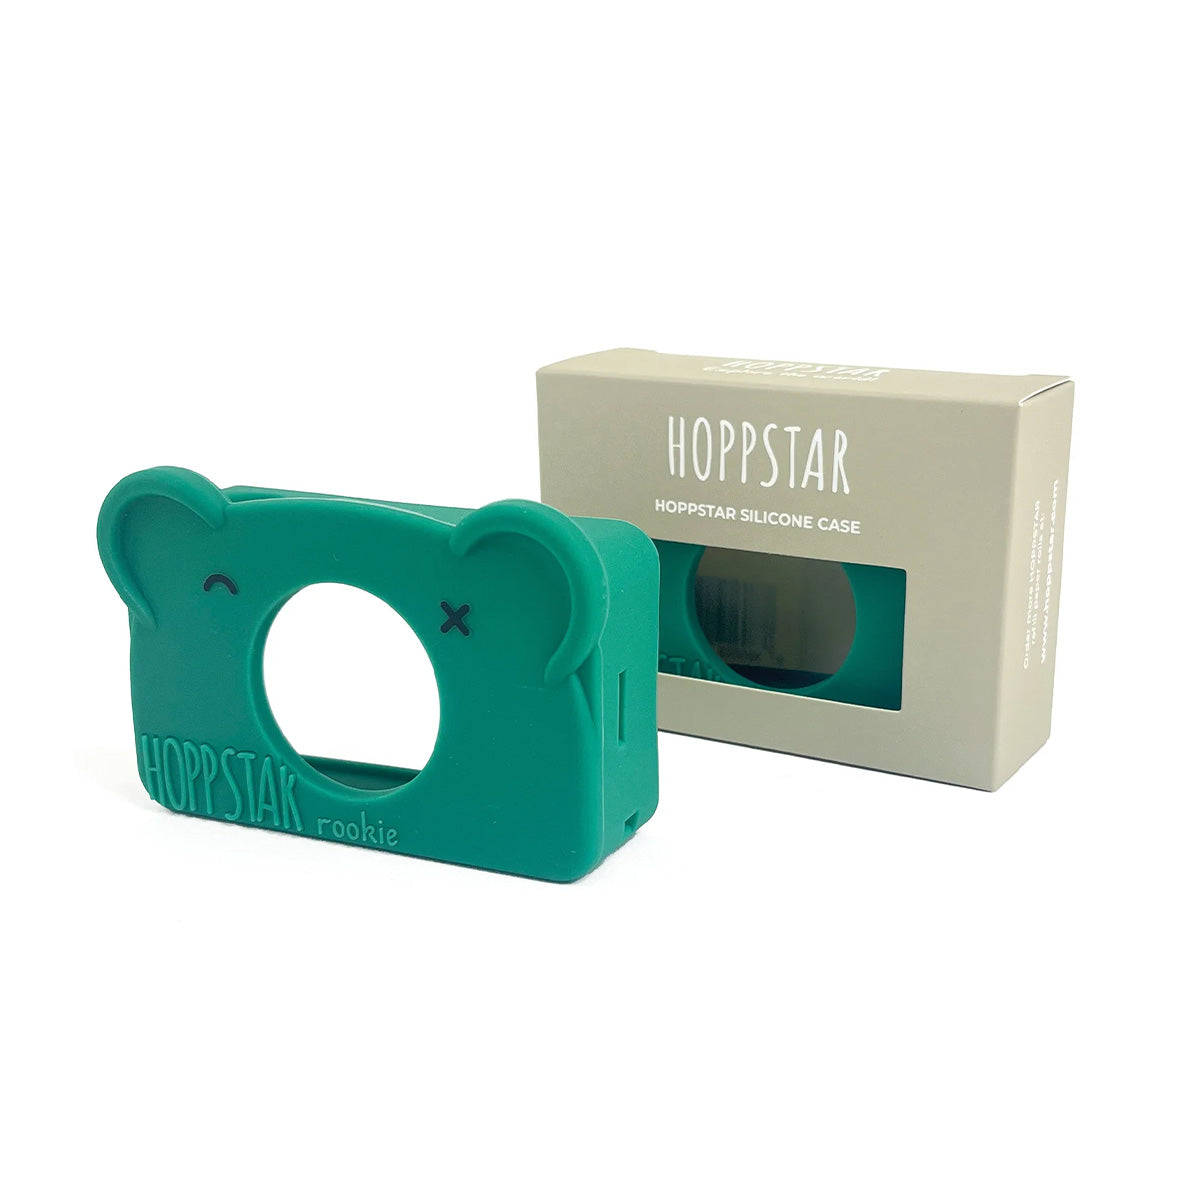 De Hoppstar siliconen case Rookie moss is een beschermhoes voor de Hoppstar Rookie camera. Deze camera wordt geleverd met 1 hoesje, maar deze kun je verwisselen voor een andere variant. VanZus.